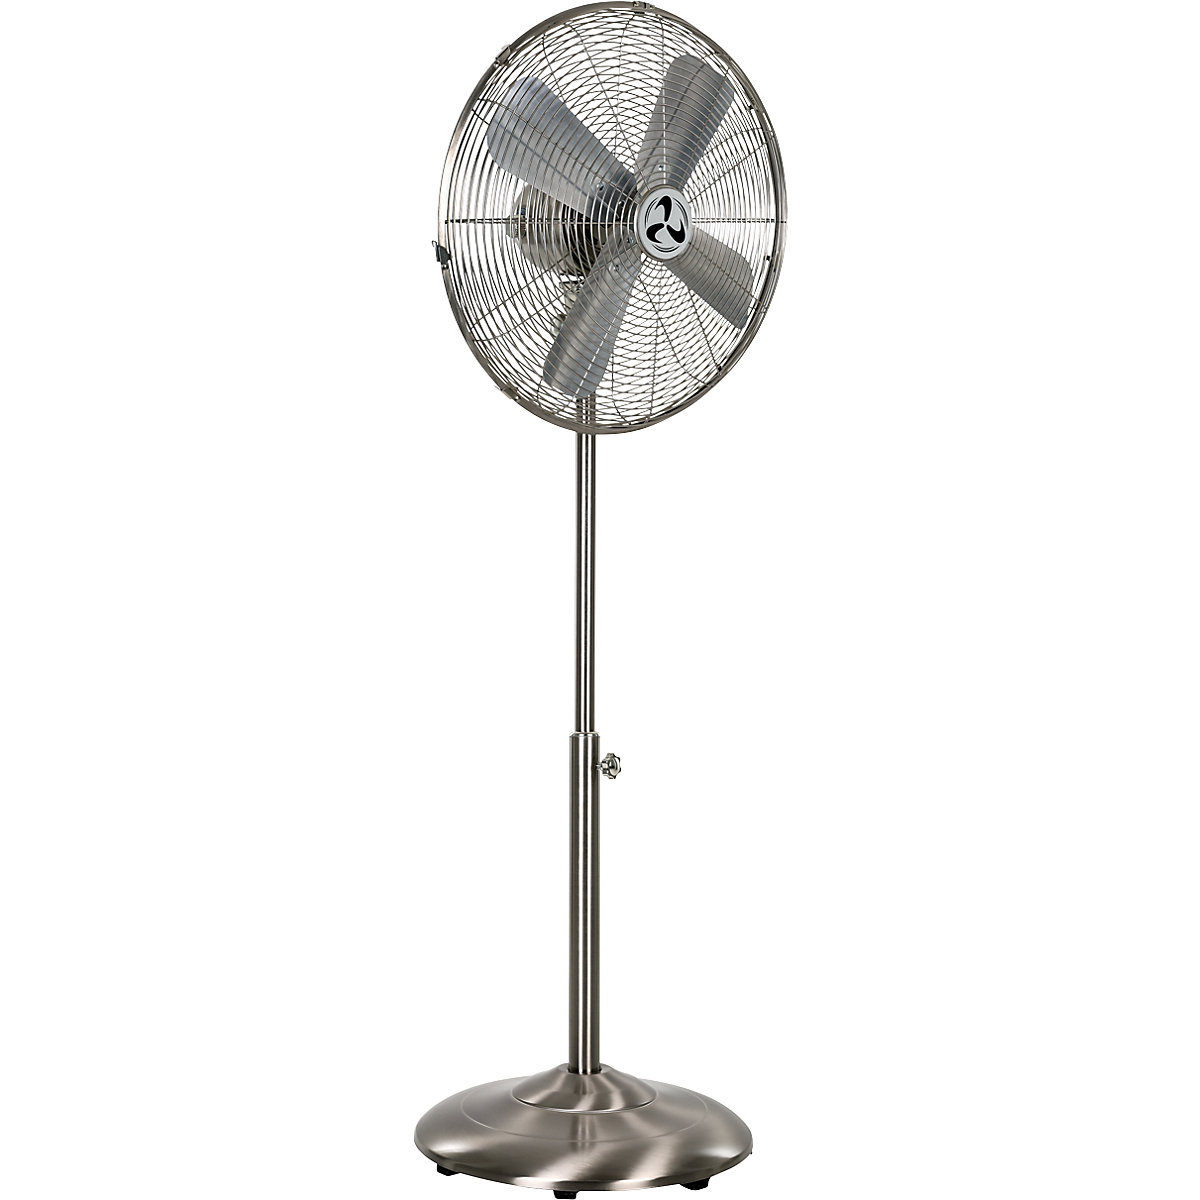 Pedestal fan, height adjustable